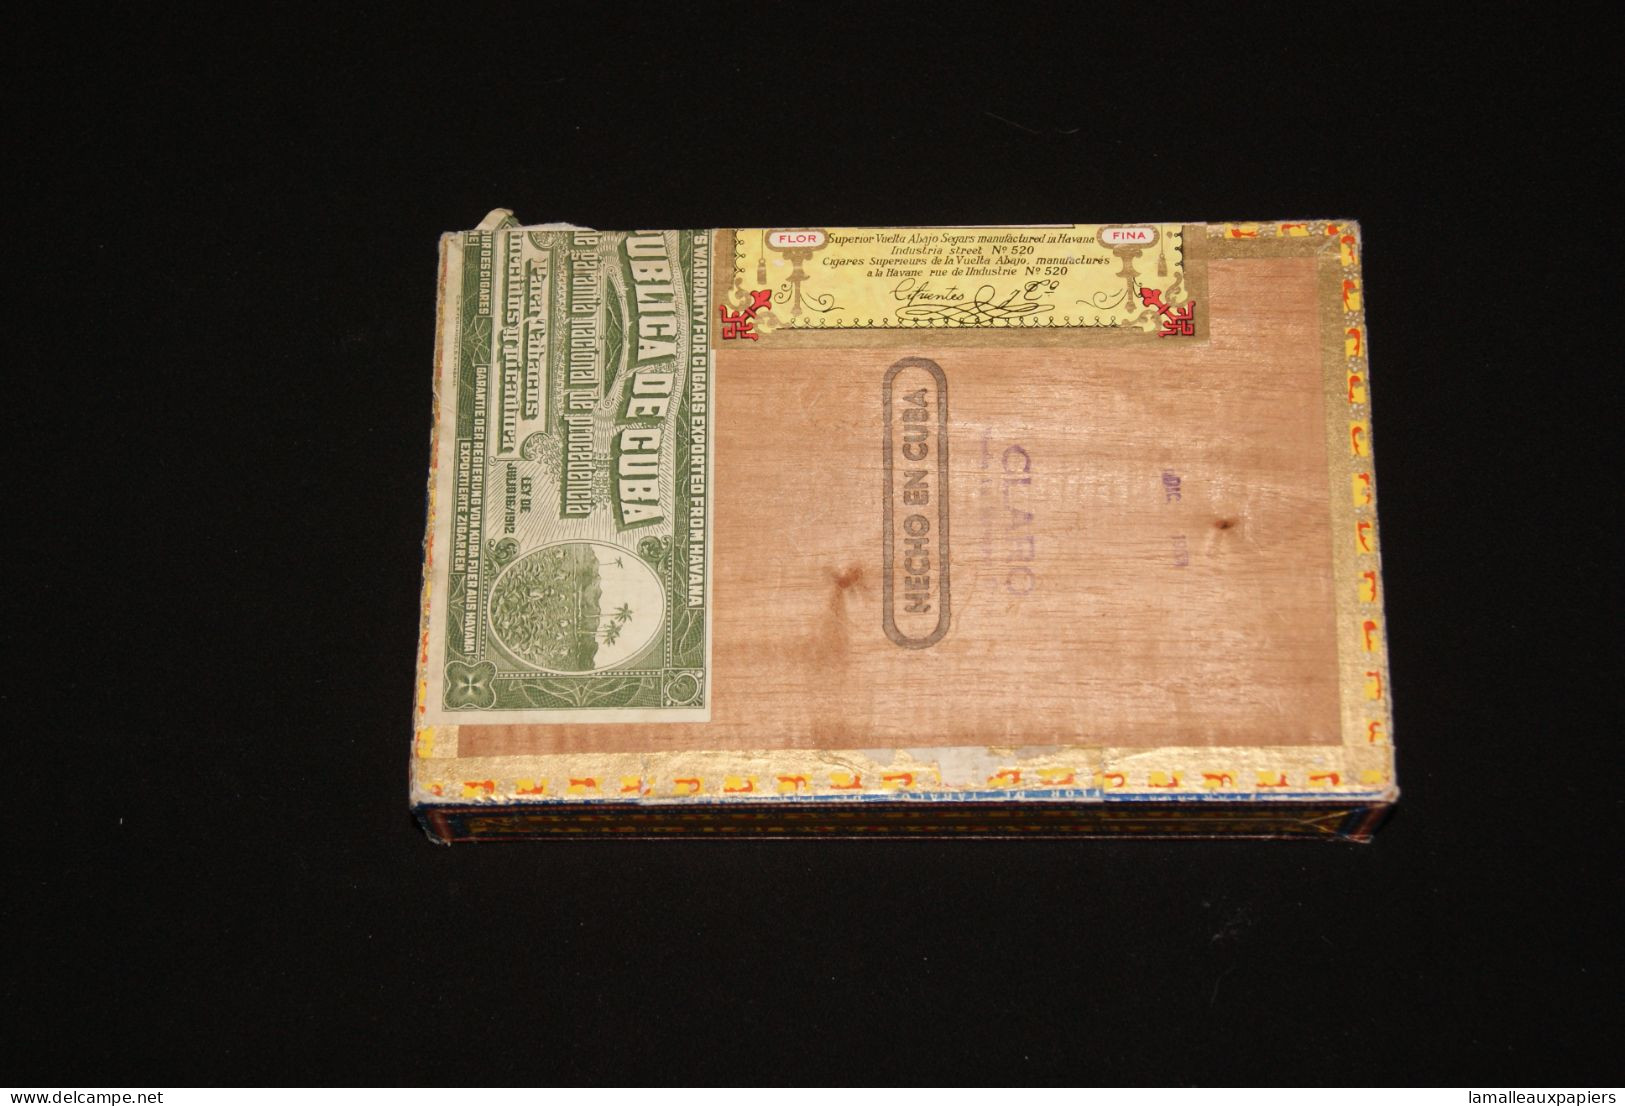 Cigares PARTAGA (habana) 1967 - Empty Tobacco Boxes